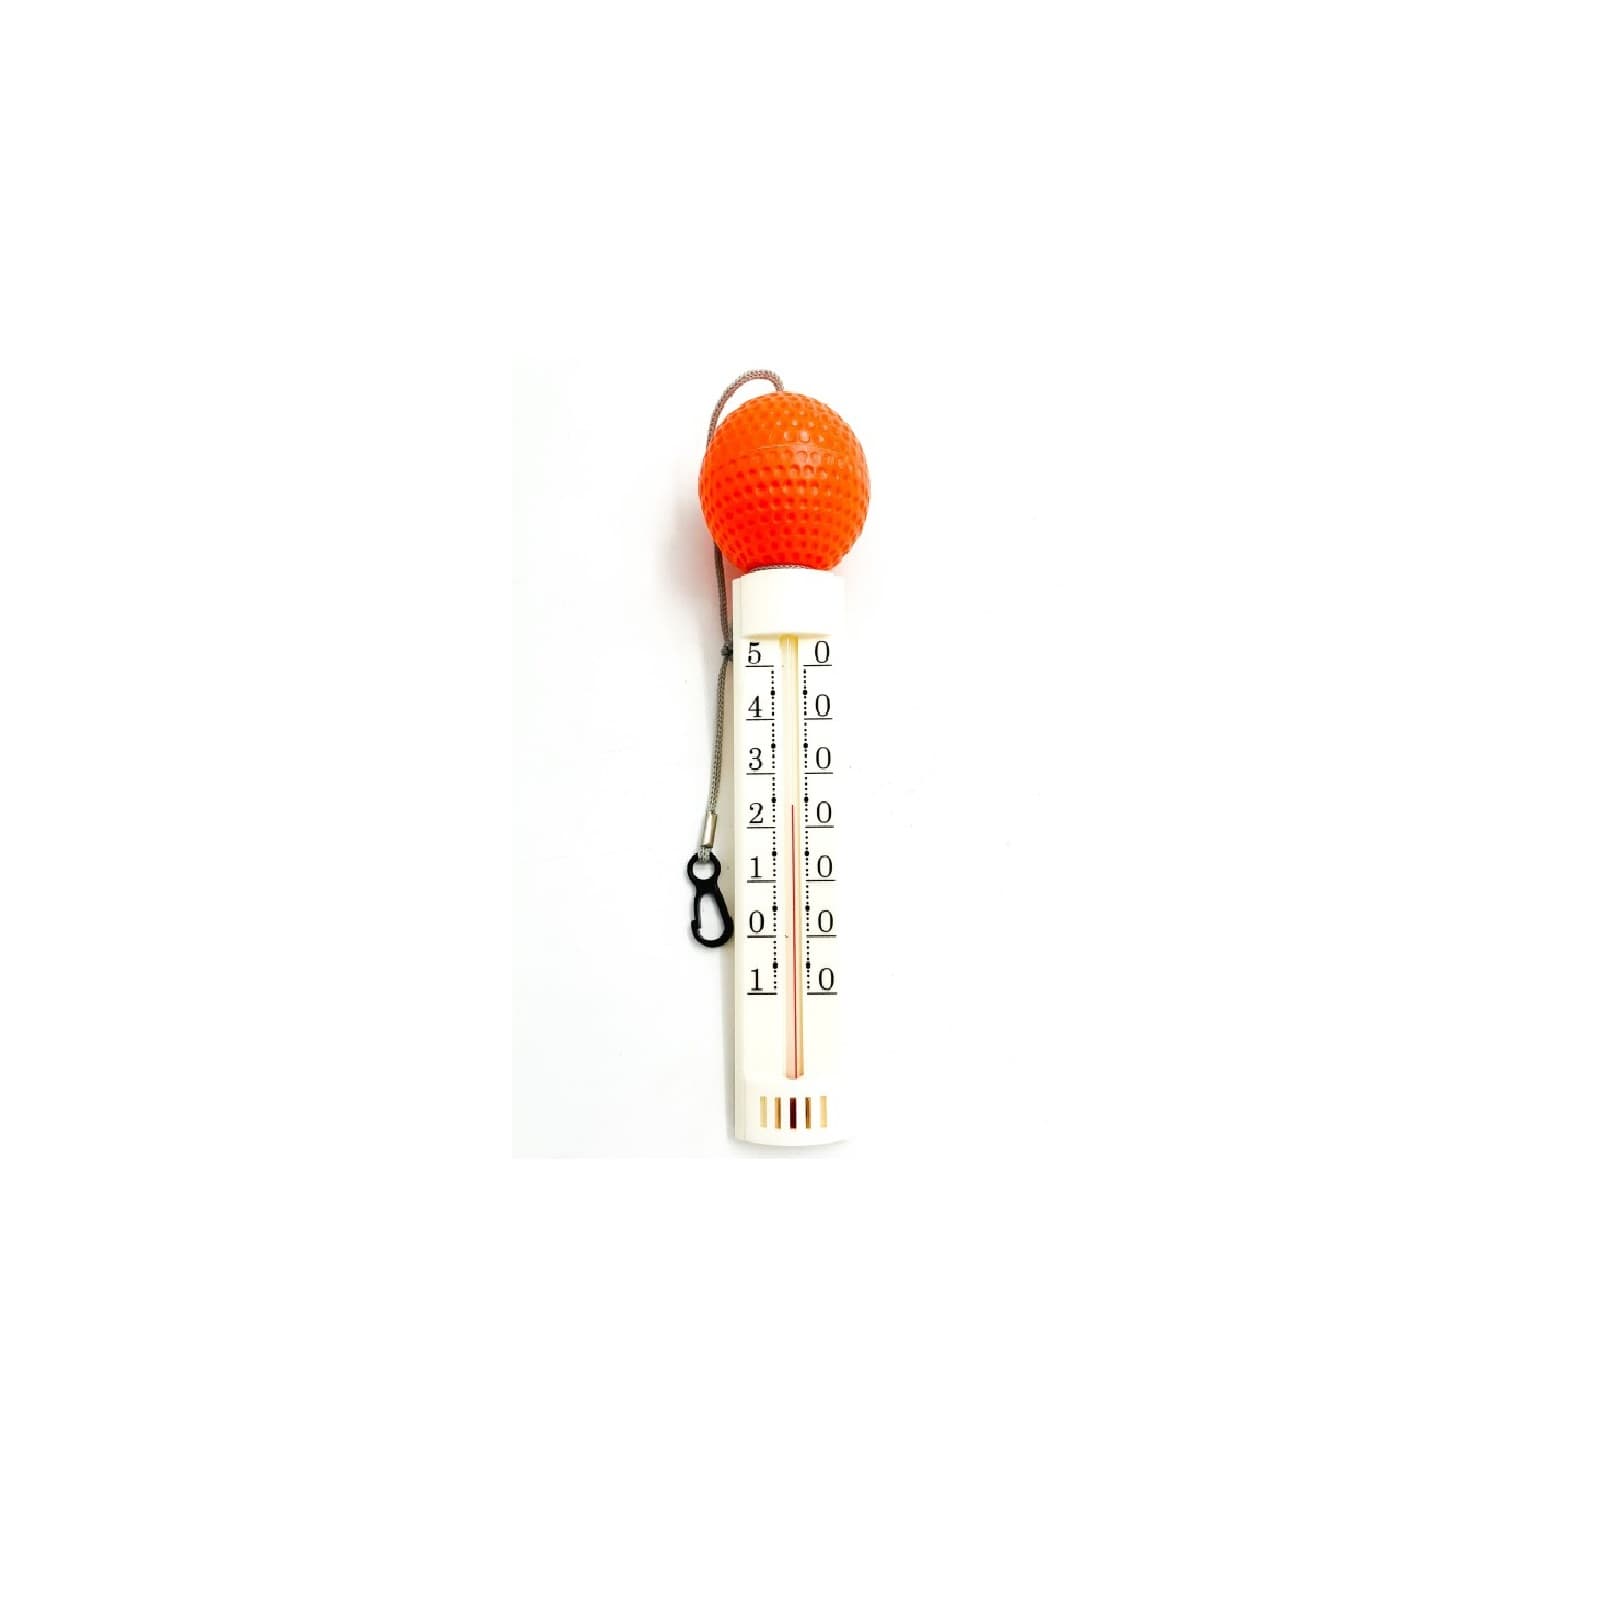 Schwimm-Thermometer mit Kugel